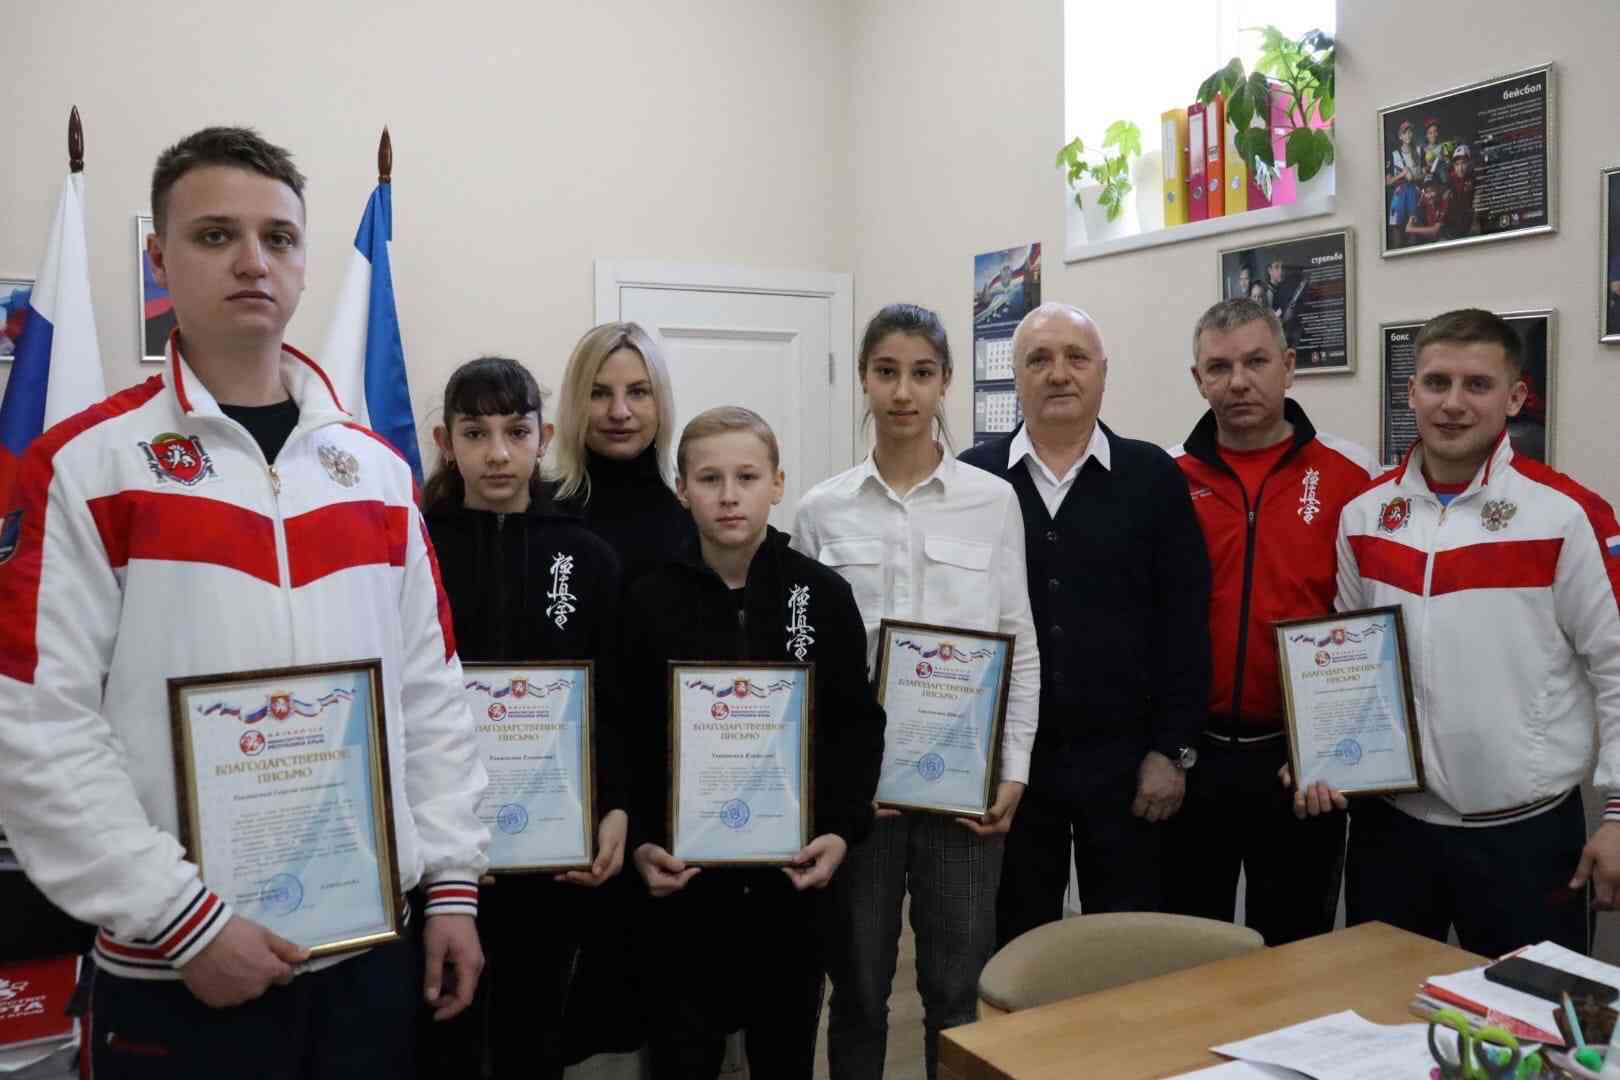 Джанкой в объективе Первенство Джанкоя по каратэ объединило 200 спортсменов Крым крыма по карате